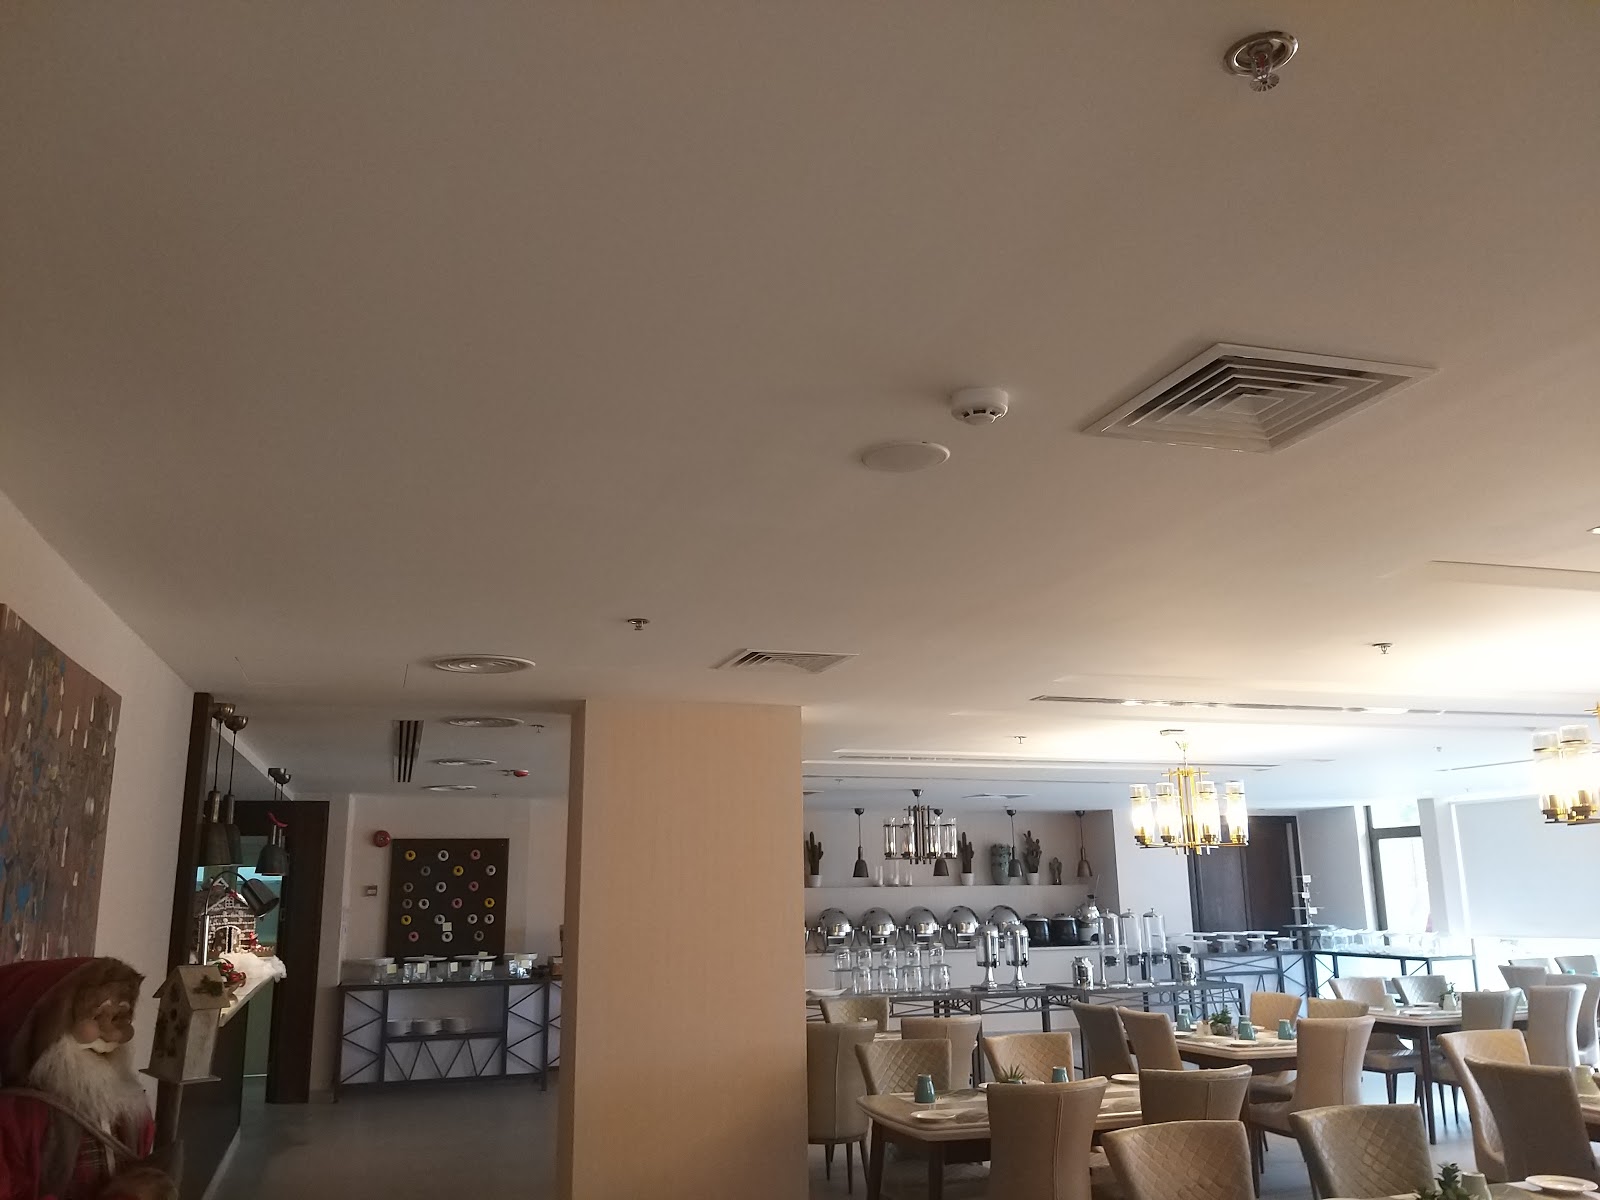 اعمال الديكور في فندق سان روك عمان الاردن من تنفيذ شركة ارابيسك